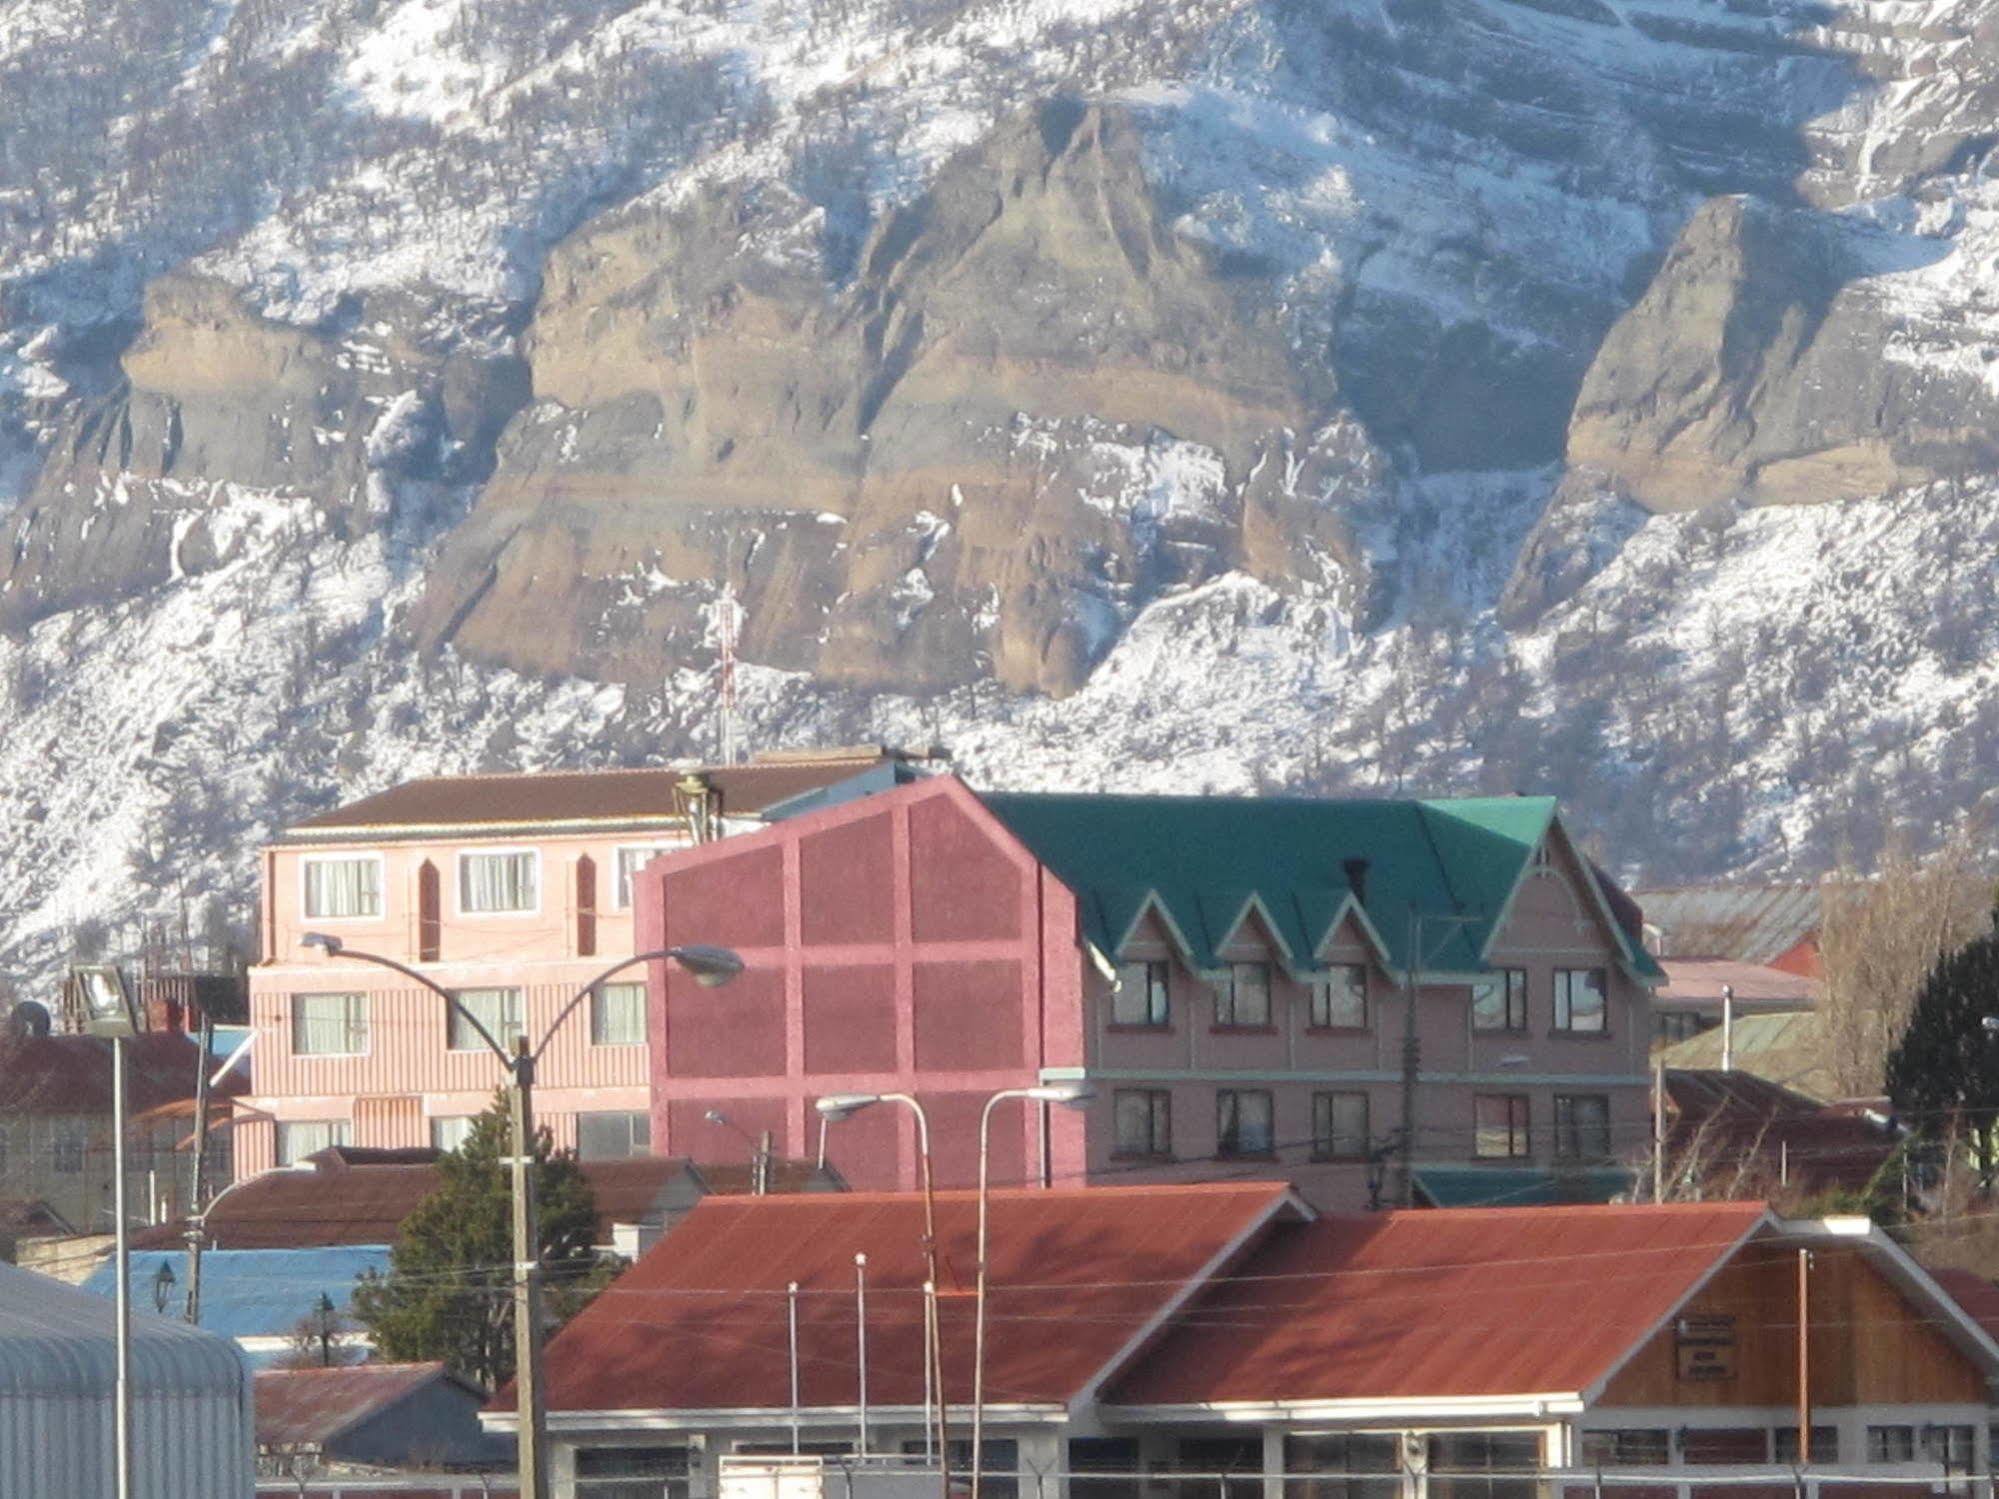 بويرتو ناتالز Hotel Saltos Del Paine المظهر الخارجي الصورة